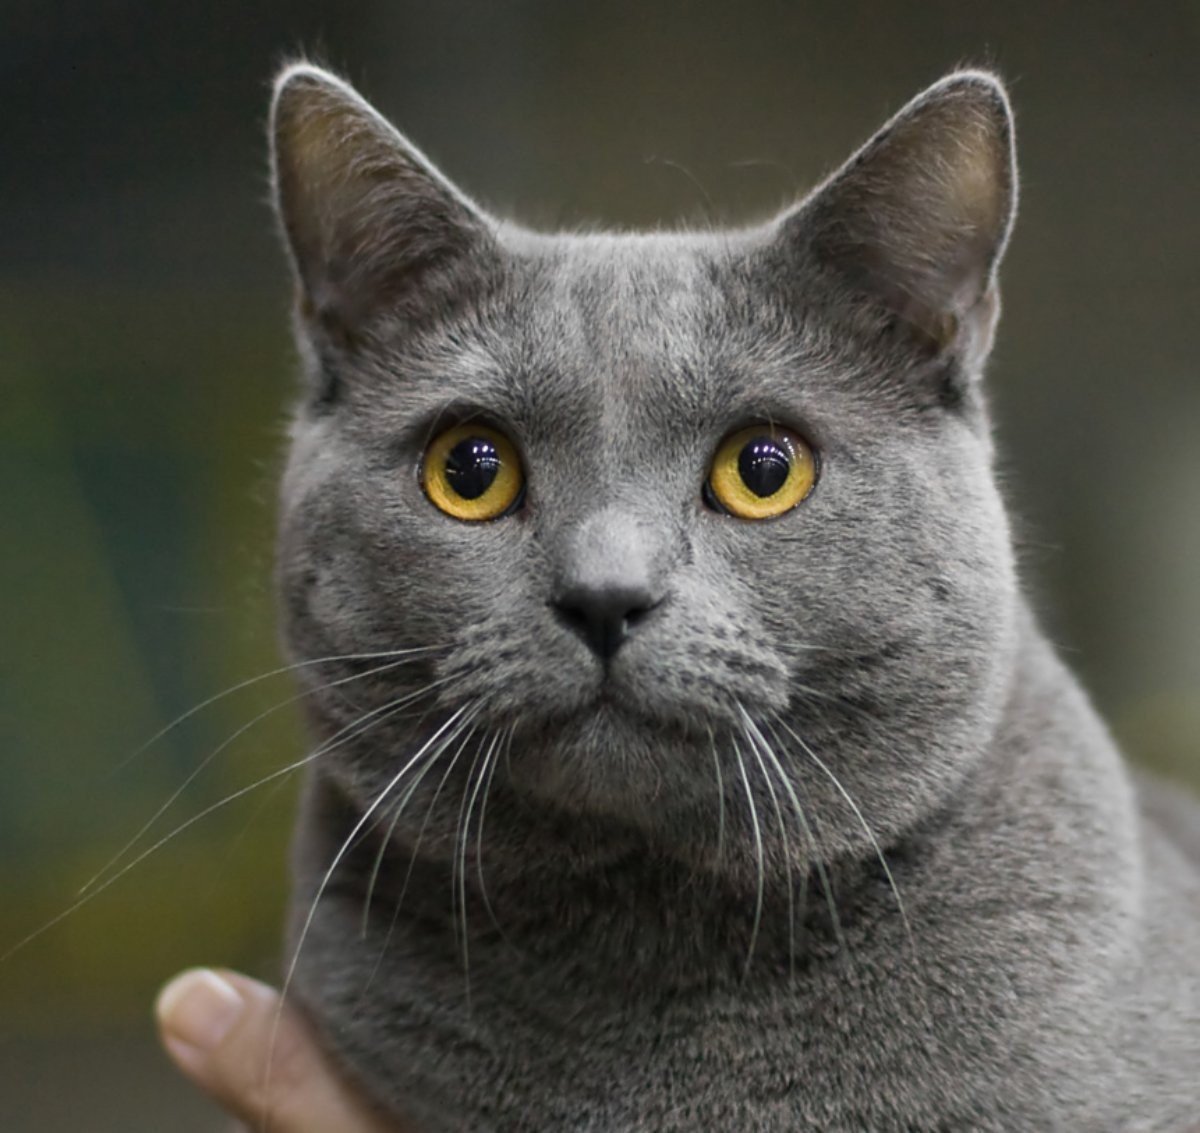 Шартрез (картезианская кошка): описание породы, фото, характер, правила содержания, отзывы владельцев